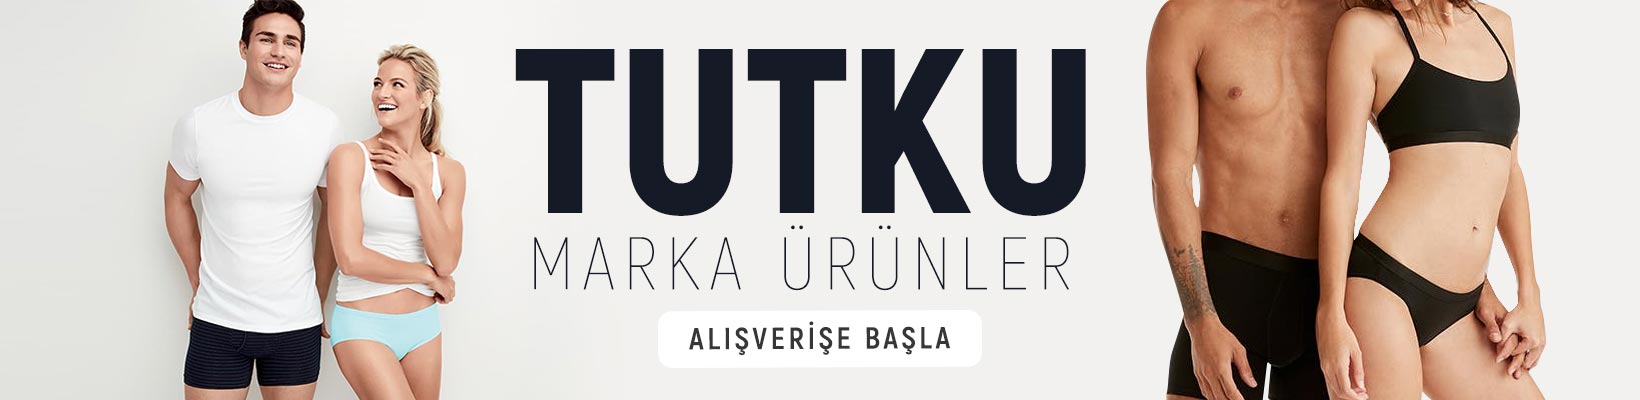 TUTKU-MARKA-ÜRÜNLER-1640X400.jpg (64 KB)